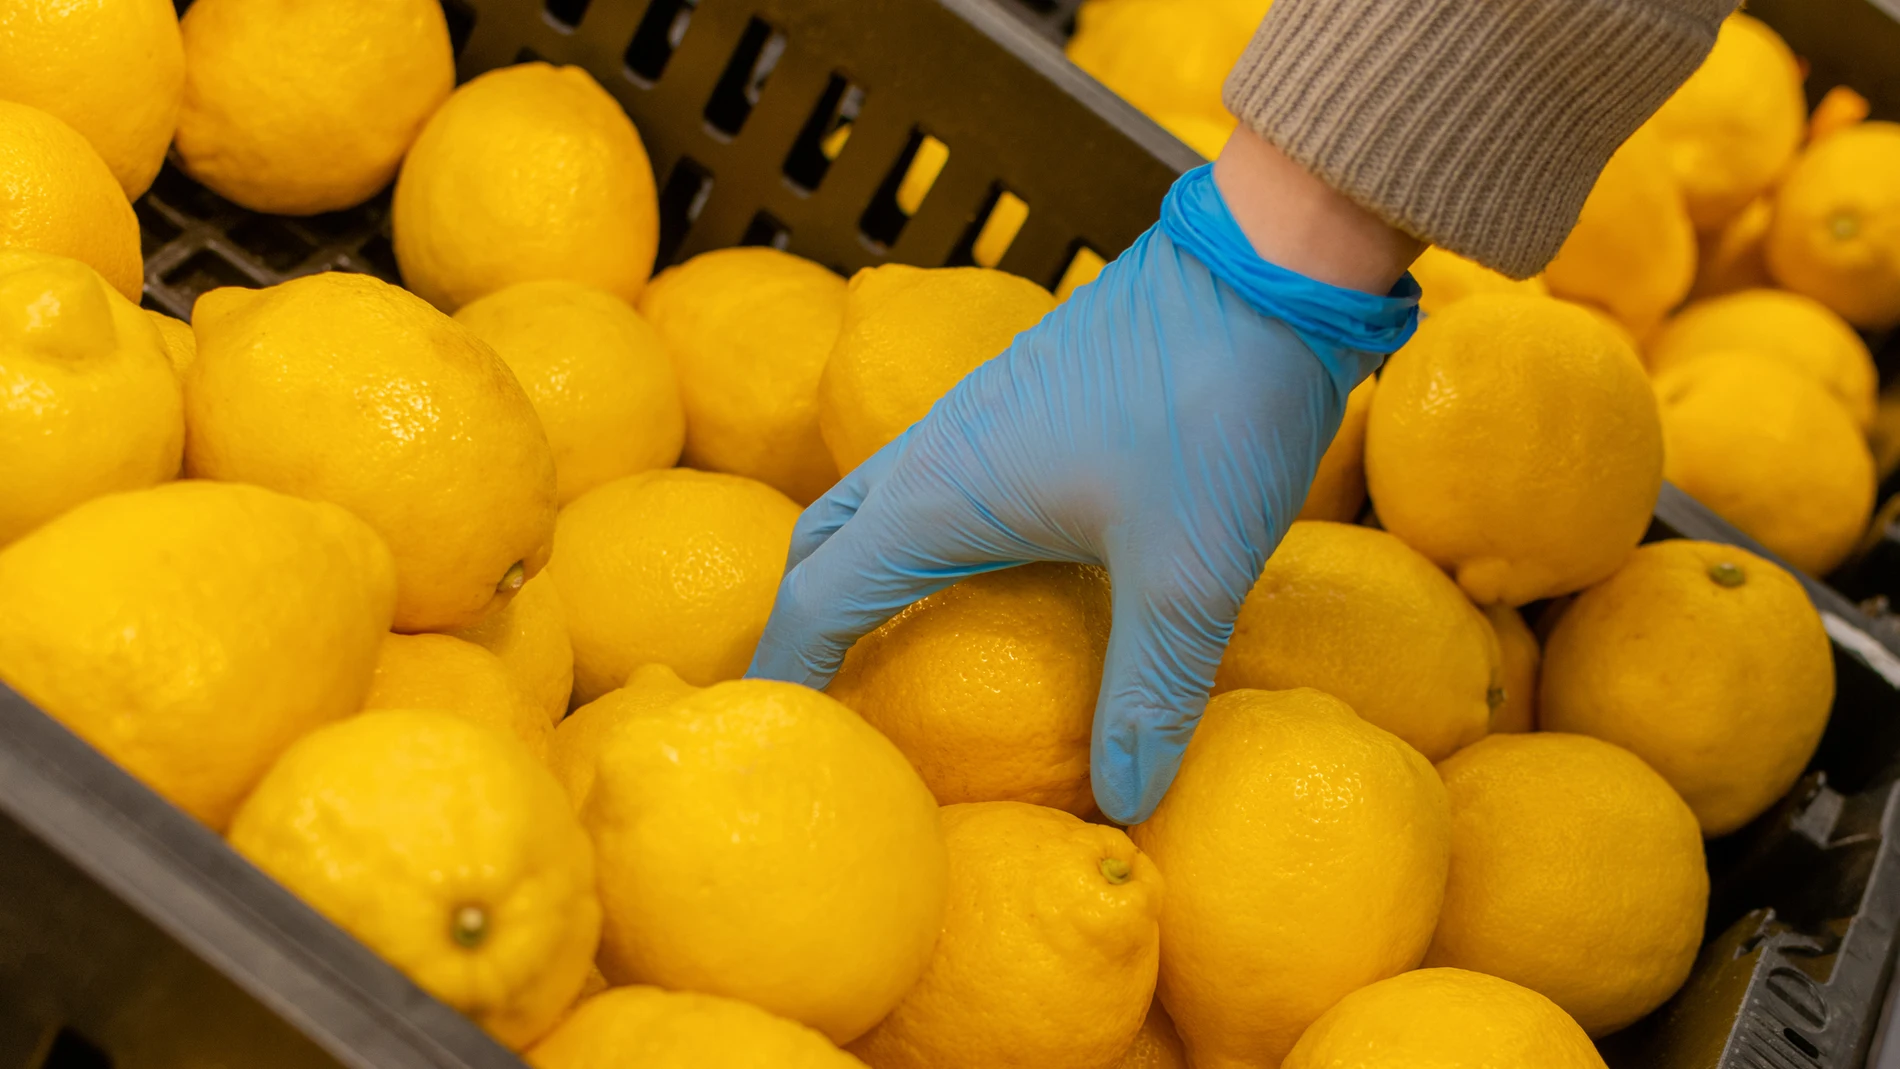 Comprador selecciona limones en el supermercado